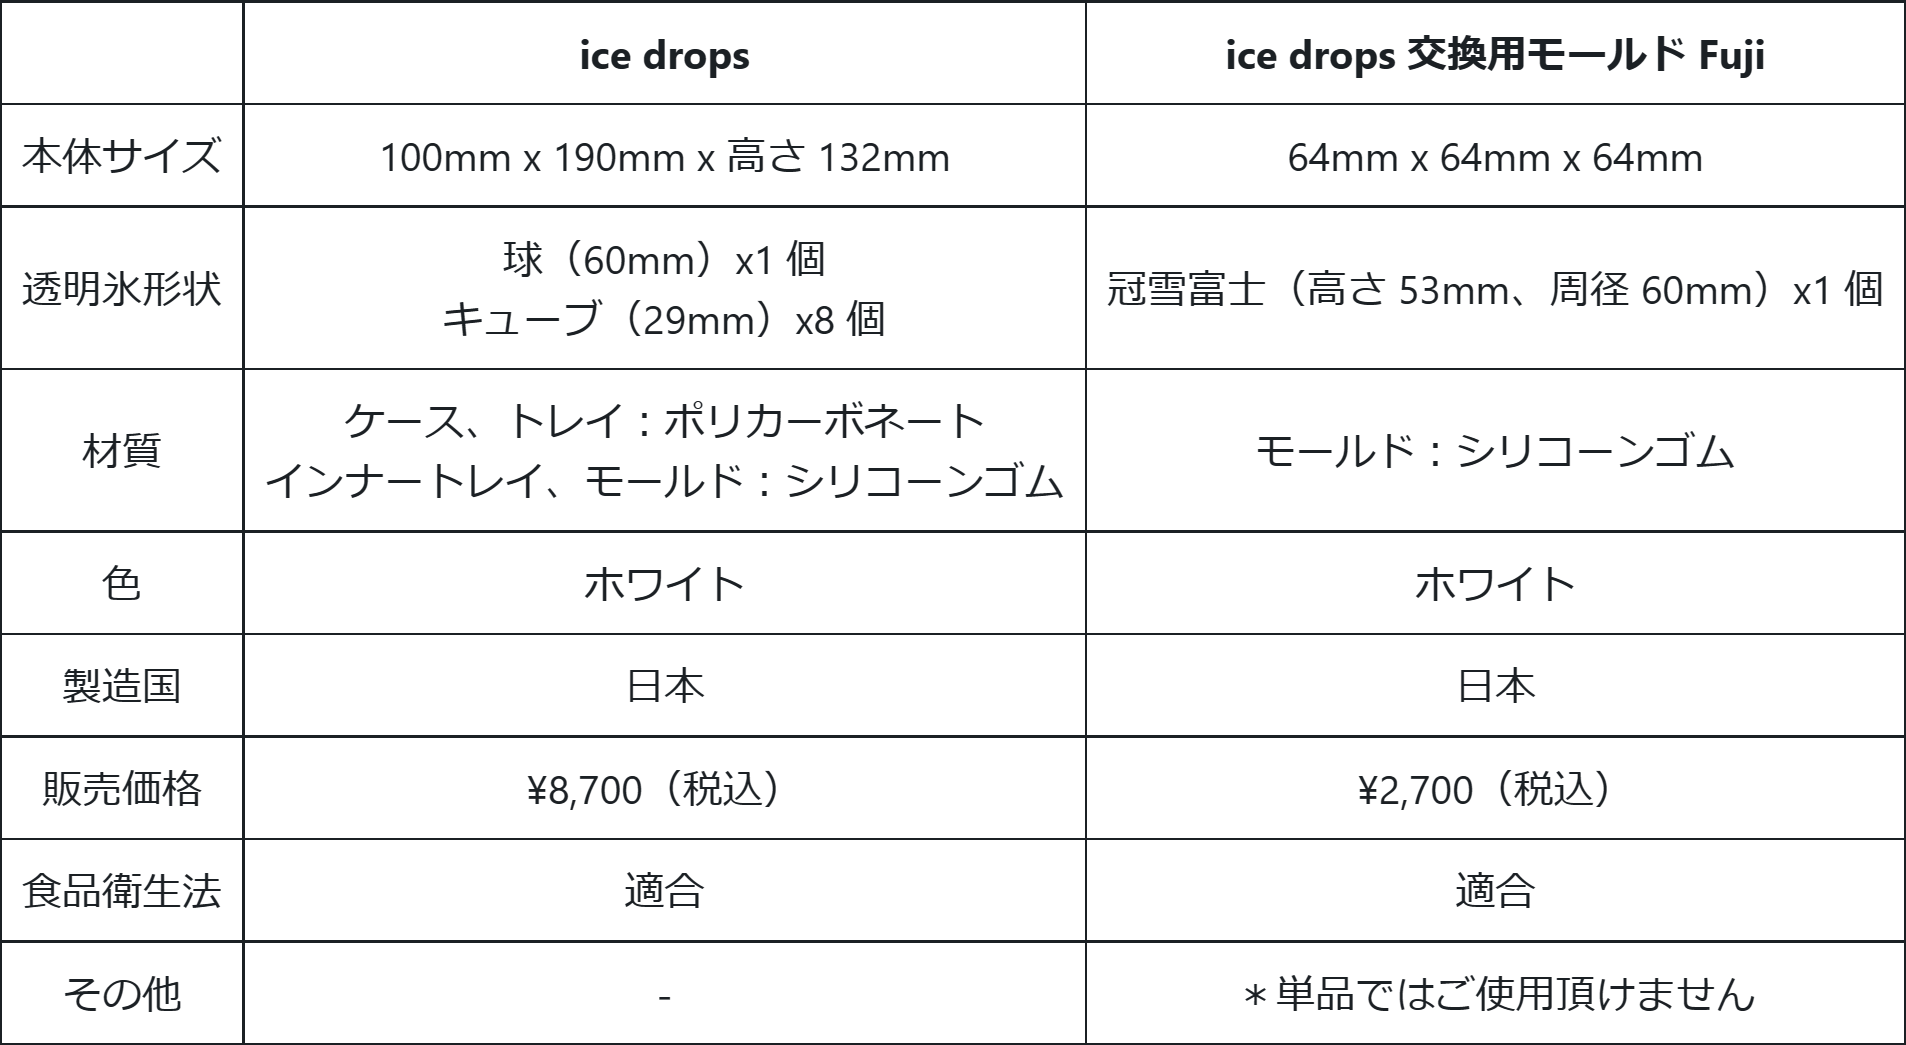 富士山型の氷も！？おうちで簡単に様々な形の透明氷が作れる製氷器「ice drops」発売開始 #Z世代Pick